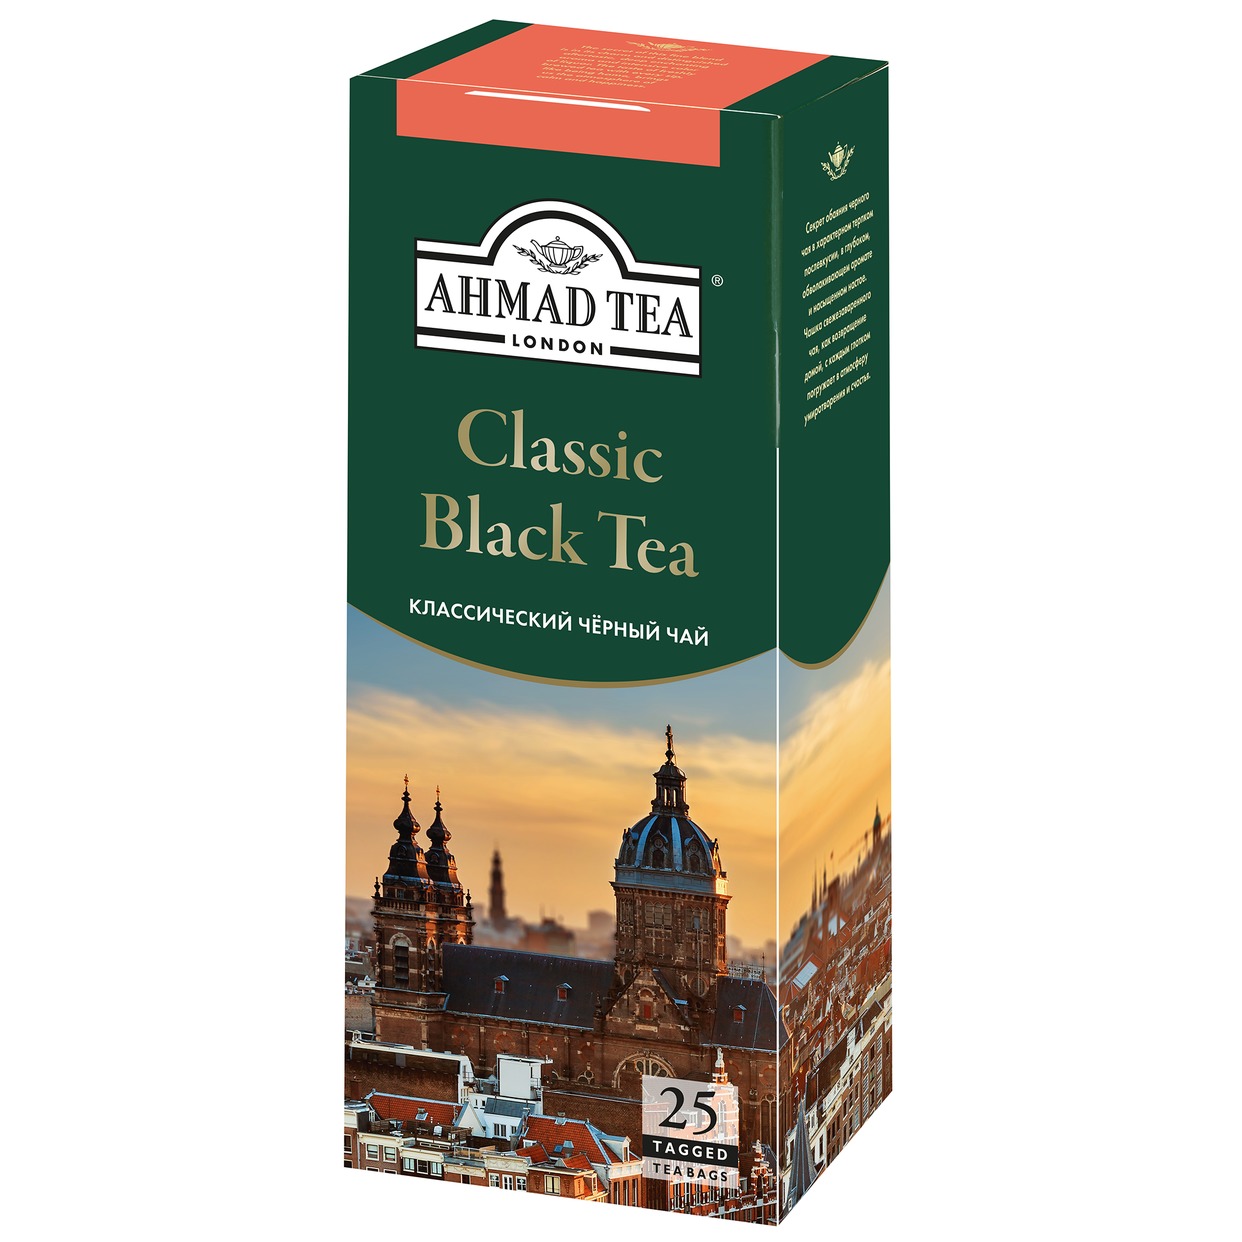 Чай Ahmad Tea Classic Black Tea черный 25пак*2г по акции в Пятерочке